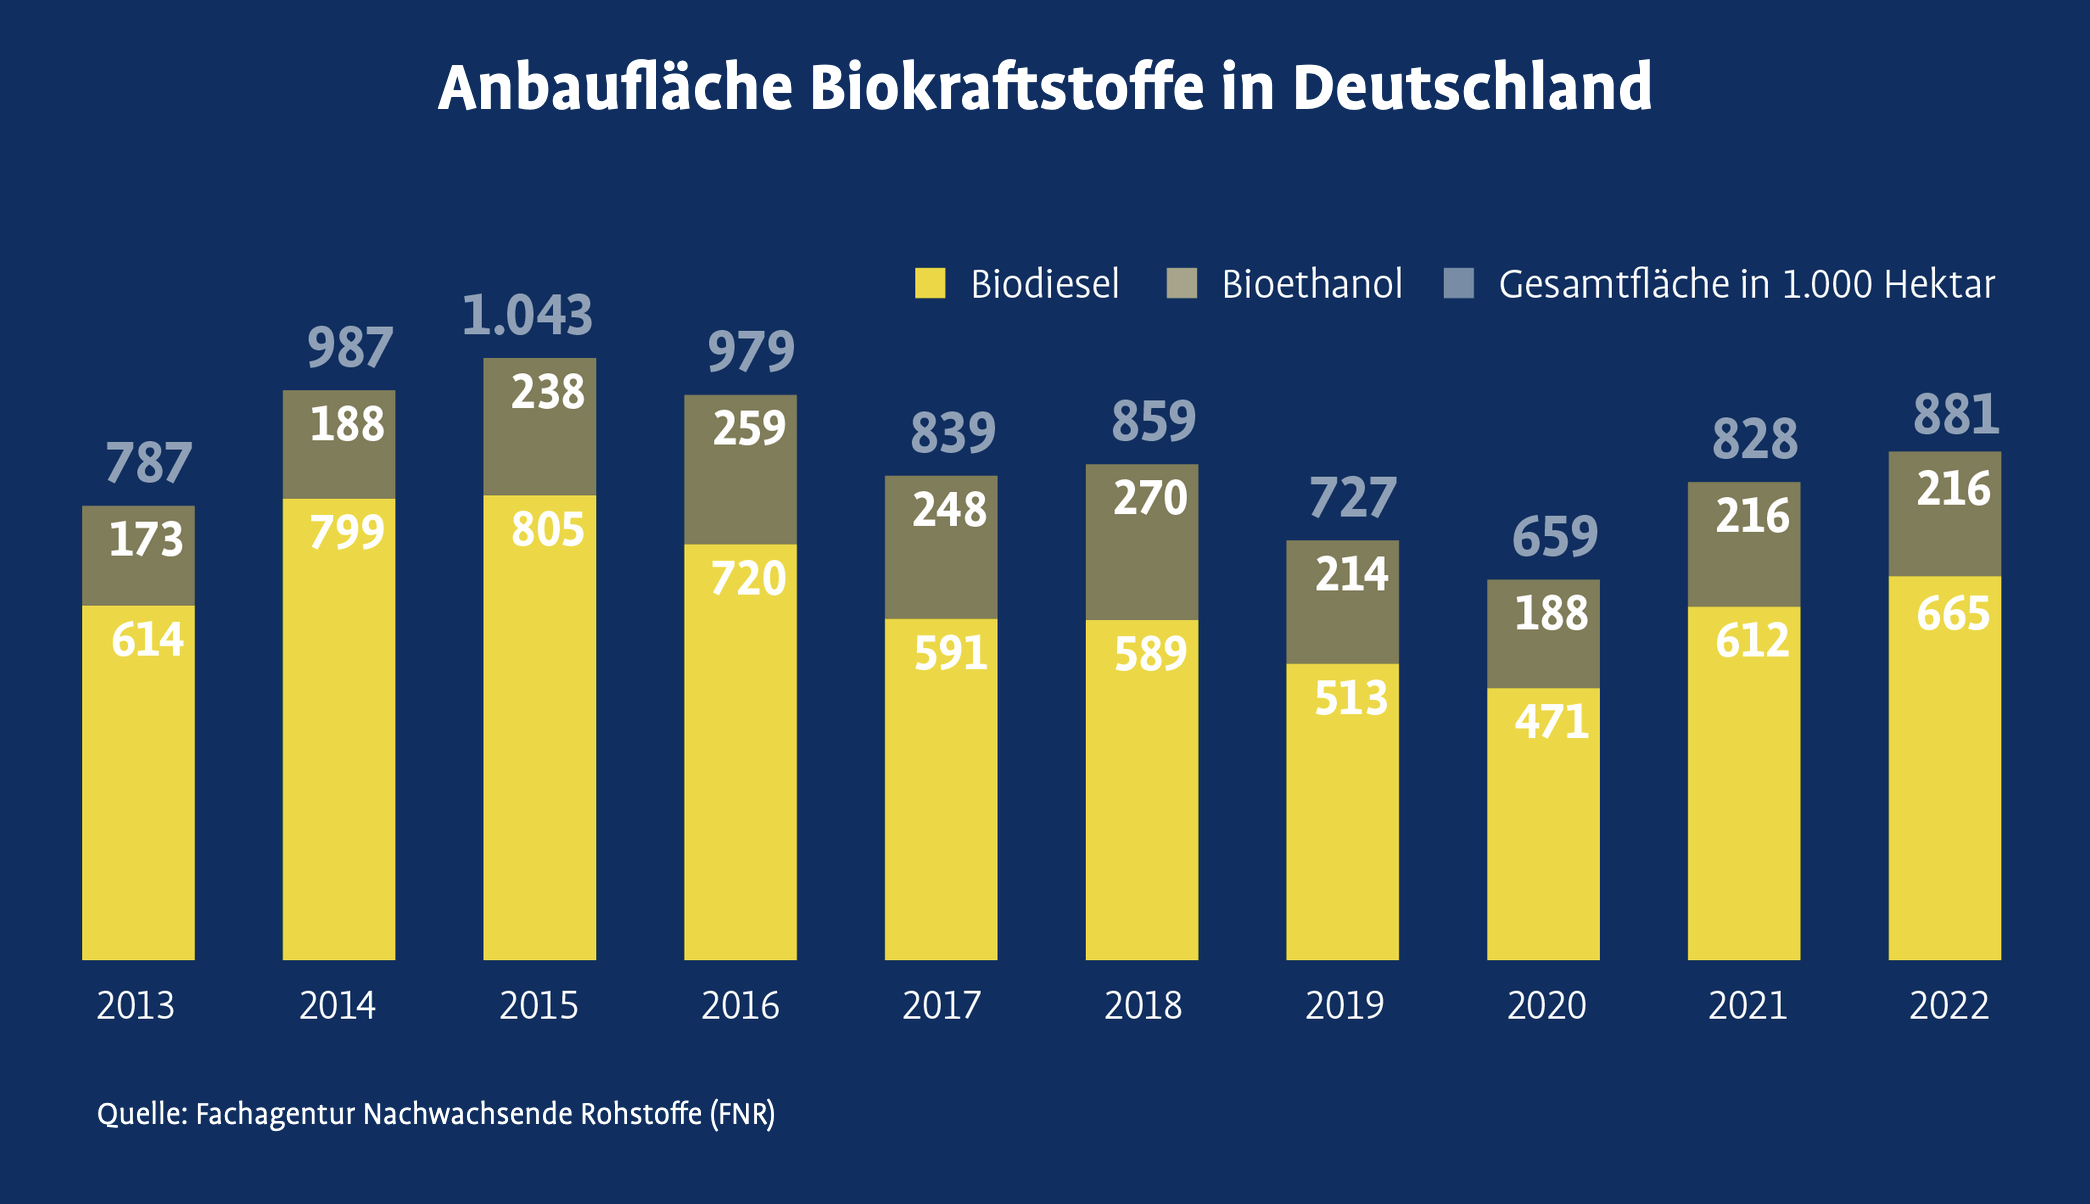 Anbaufläche Biokraftstoffe in Deutschland